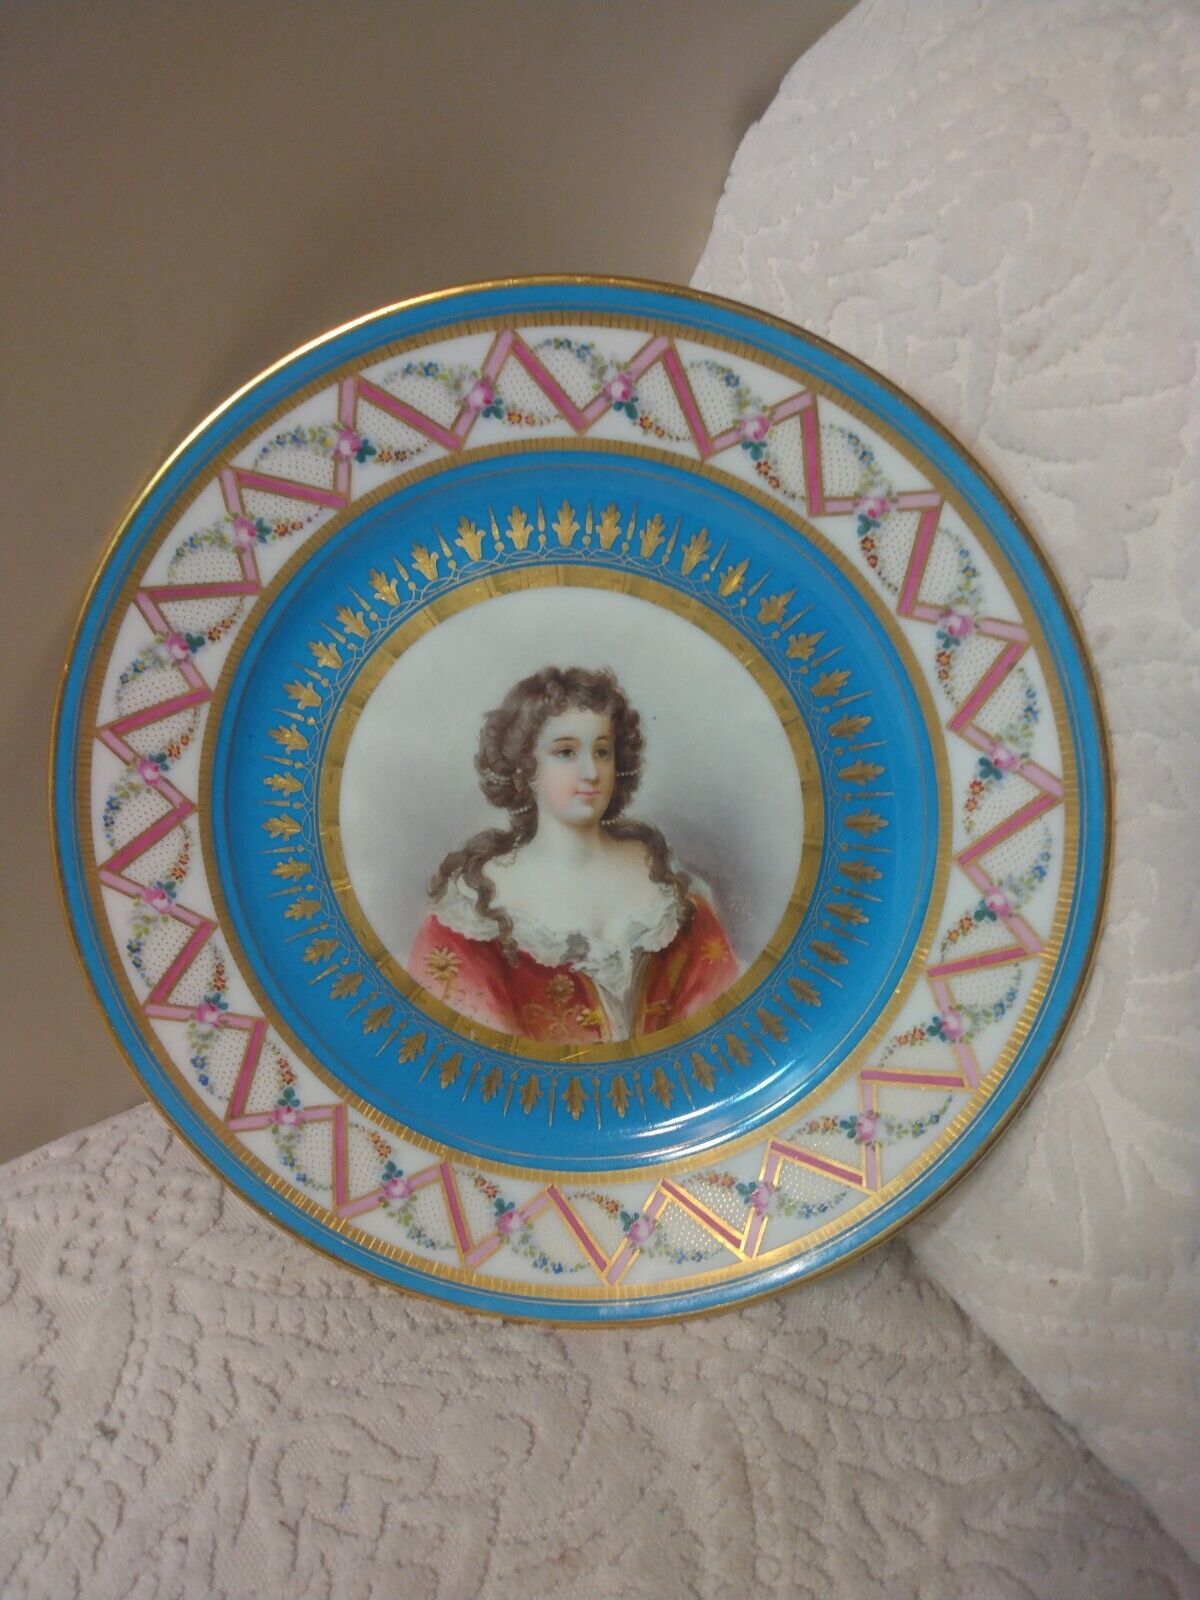 Antique Sevres Portrait Porcelain Plate Sgnd Mkd 19th C. Gold Dec. Fancy PERFECT